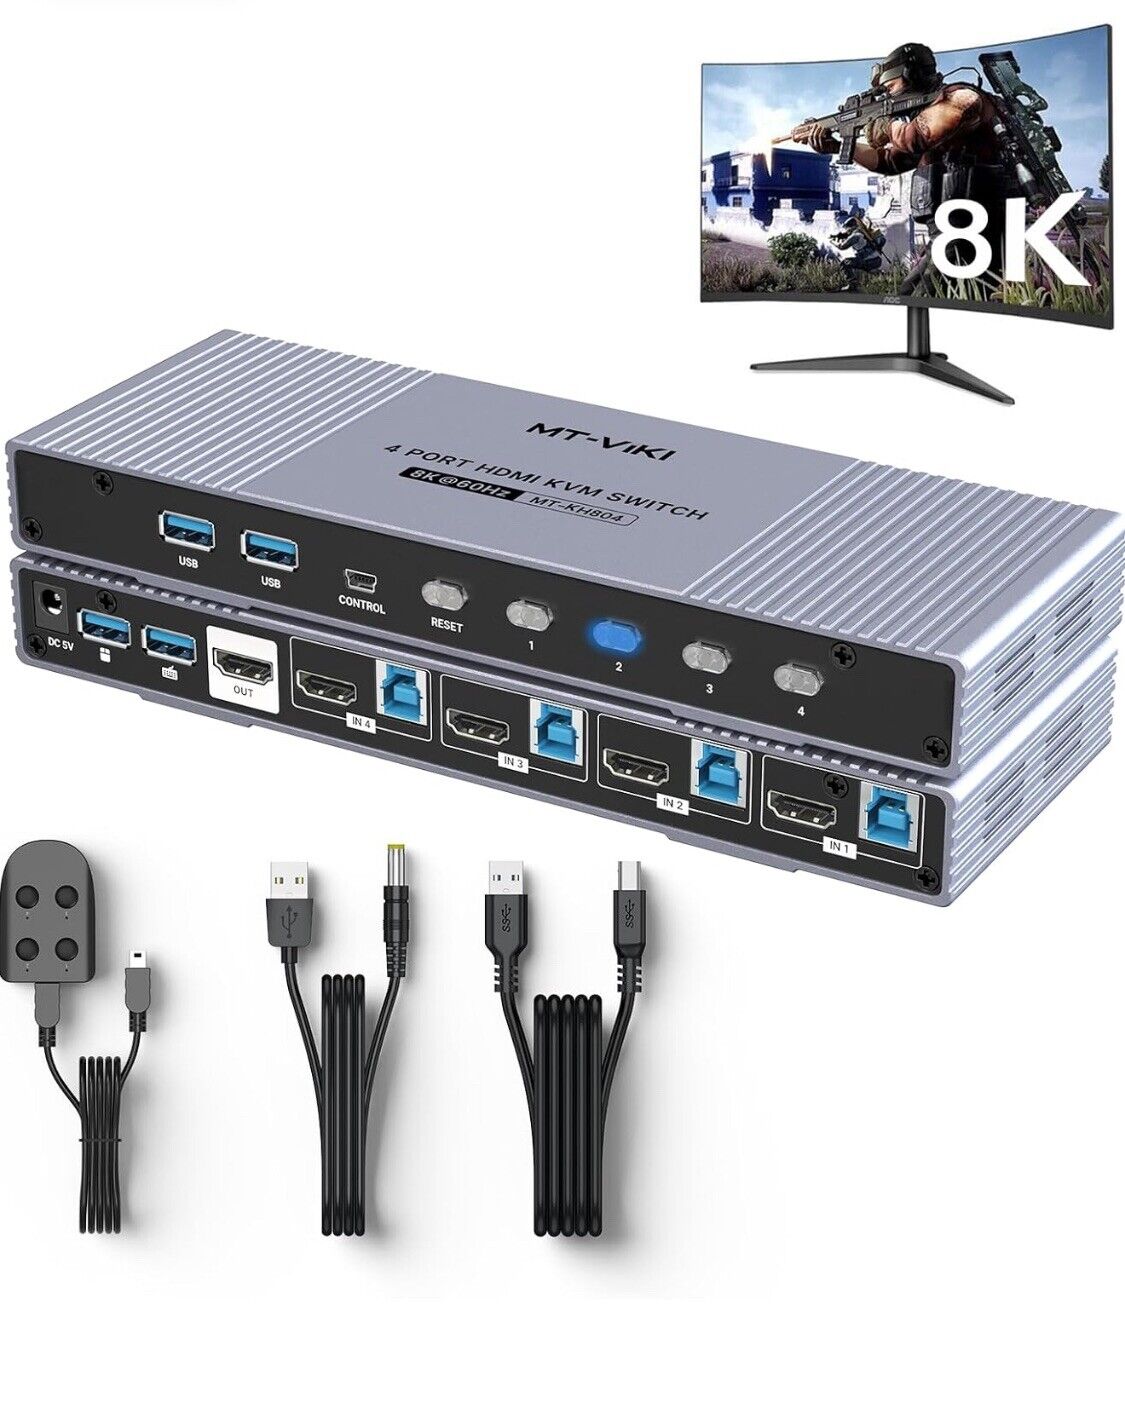 MT-VIKI 4K@120Hz/144Hz USB 3.0 HDMI KVM Switch 4 port 8K@60Hz, *No Cord*